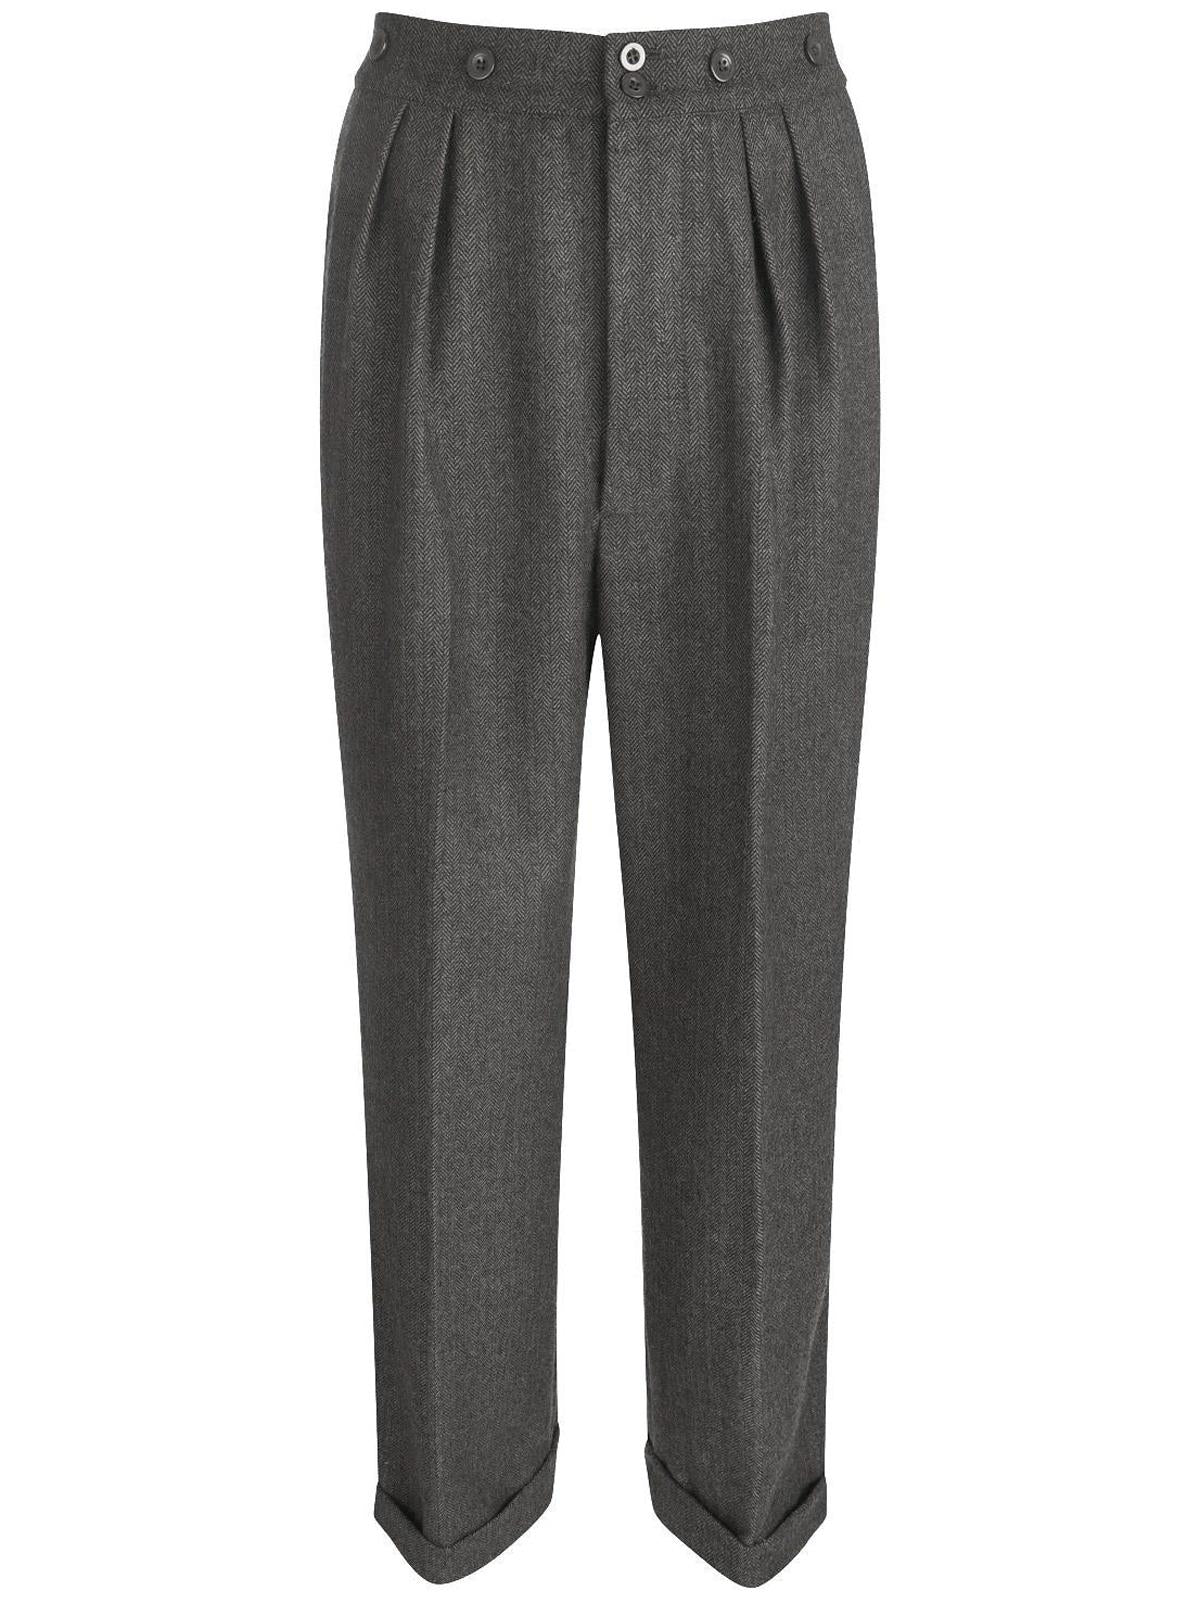 1940s Vintage Granville Herringbone Wool Bag Trousers in Grey ...